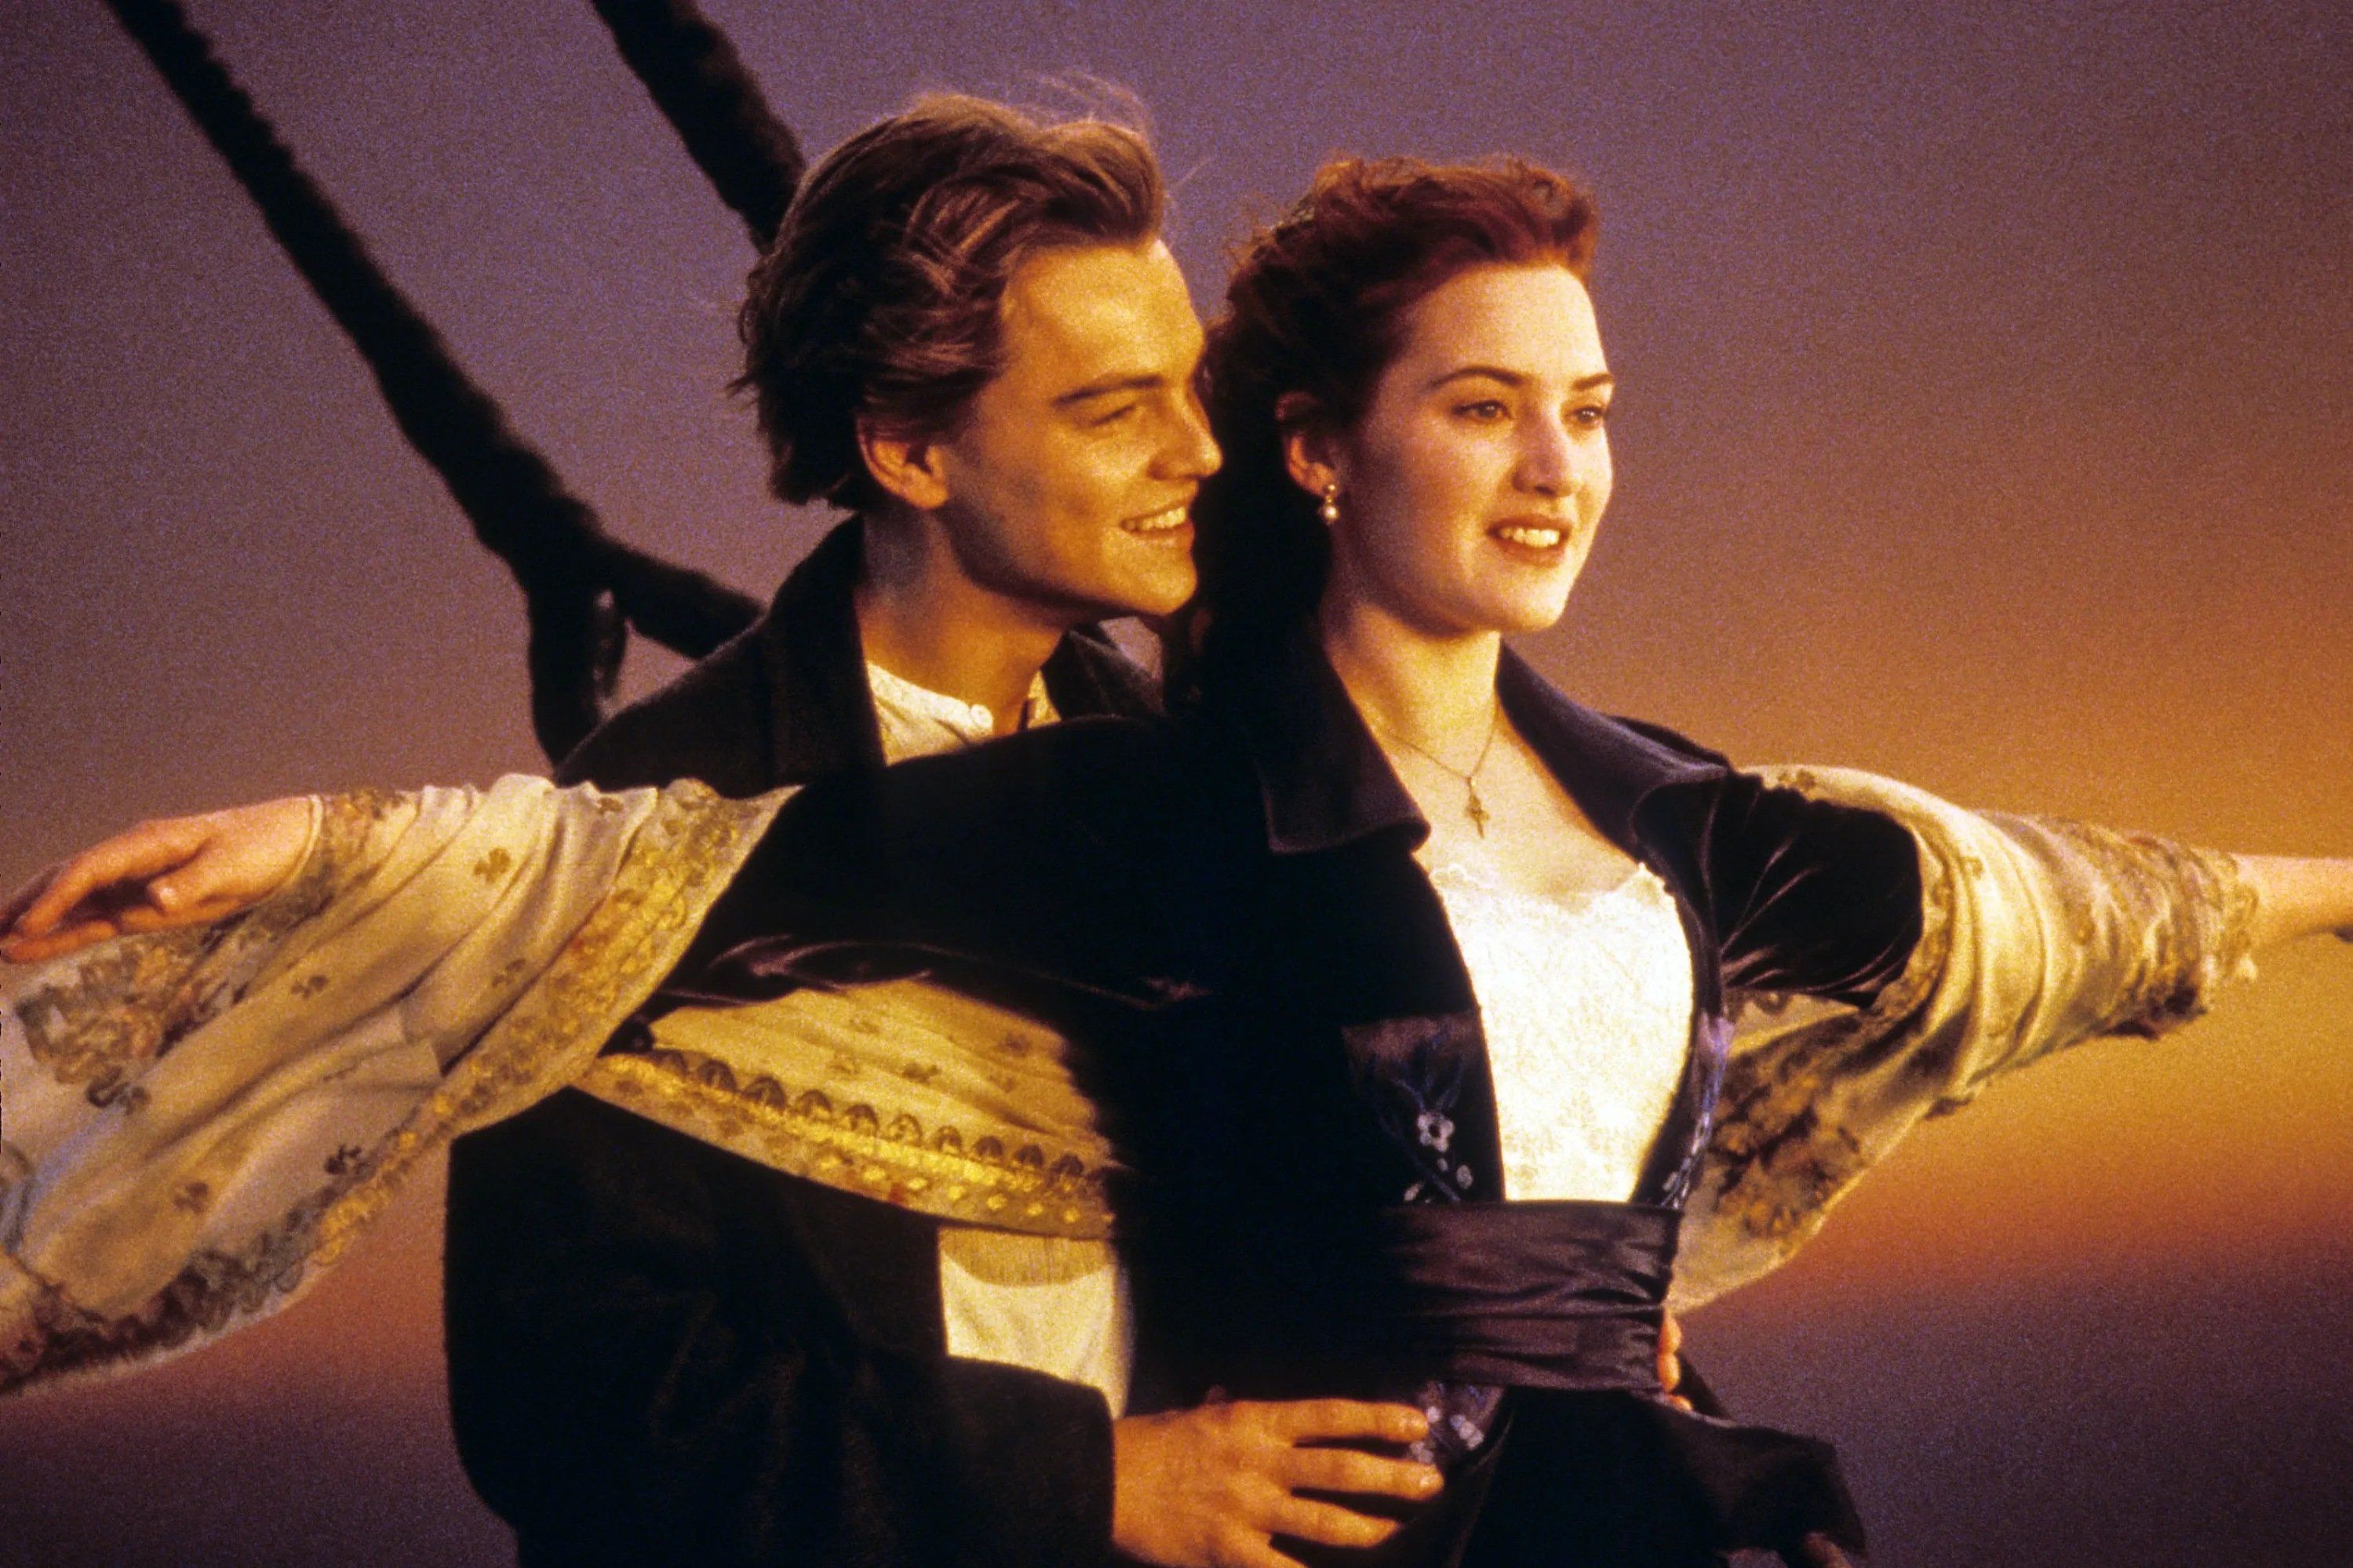 Sao "Titanic" ngày ấy - bây giờ: Leonardo DiCaprio đời tư ồn ào, chỉ yêu bạn gái dưới 25 tuổi - 1